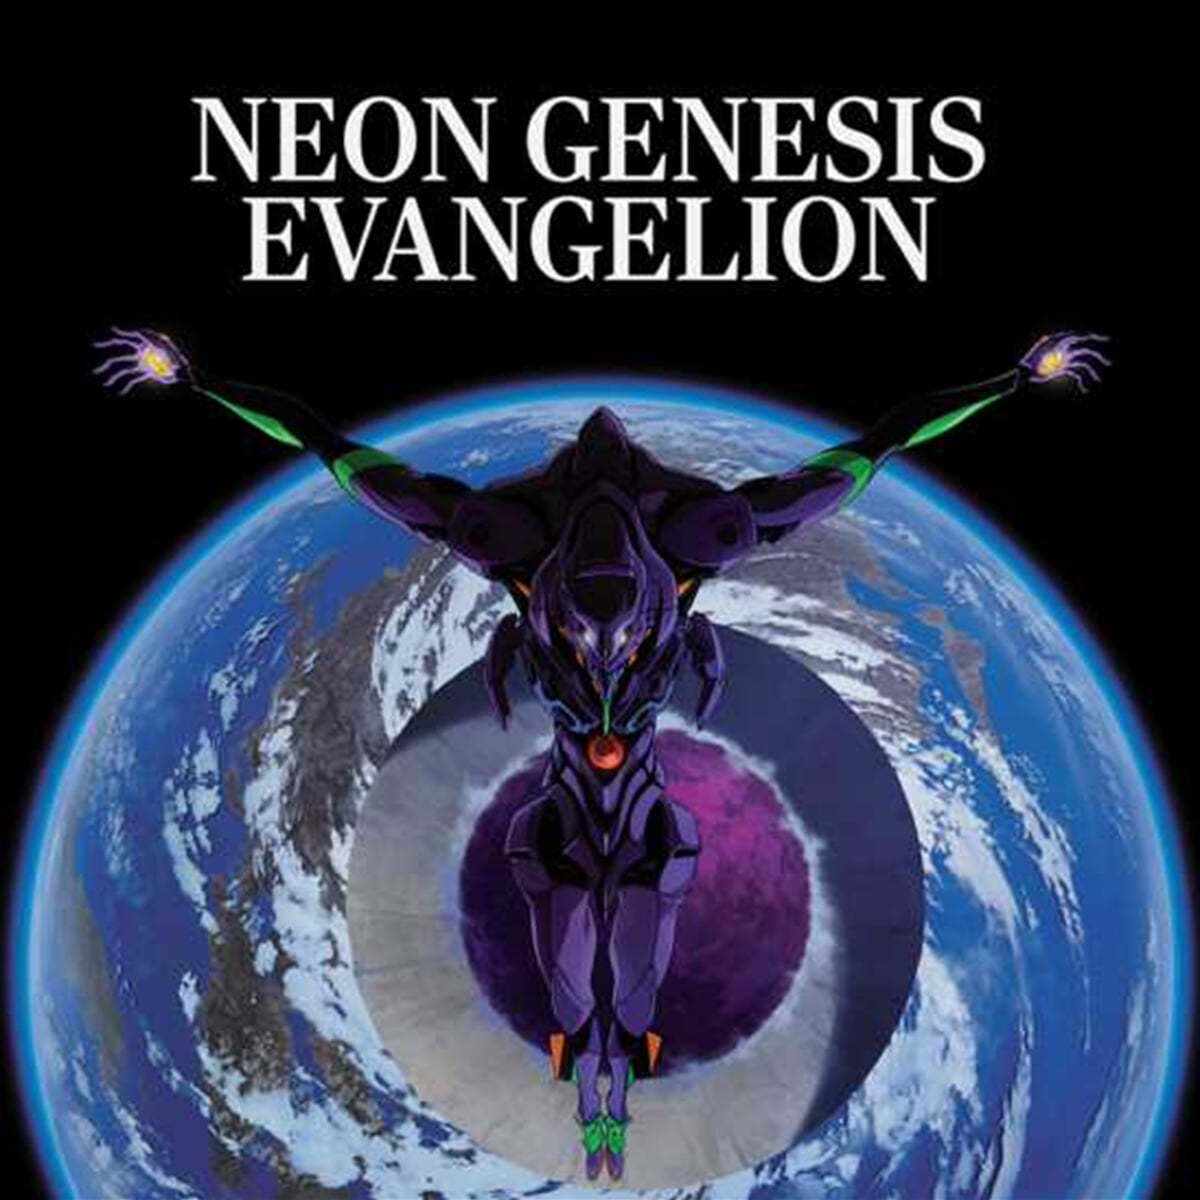 신세기 에반게리온 애니메이션 음악 (Neon Genesis Evangeion OST by Sagisu Shiro) [스모키 블루 컬러 2LP]